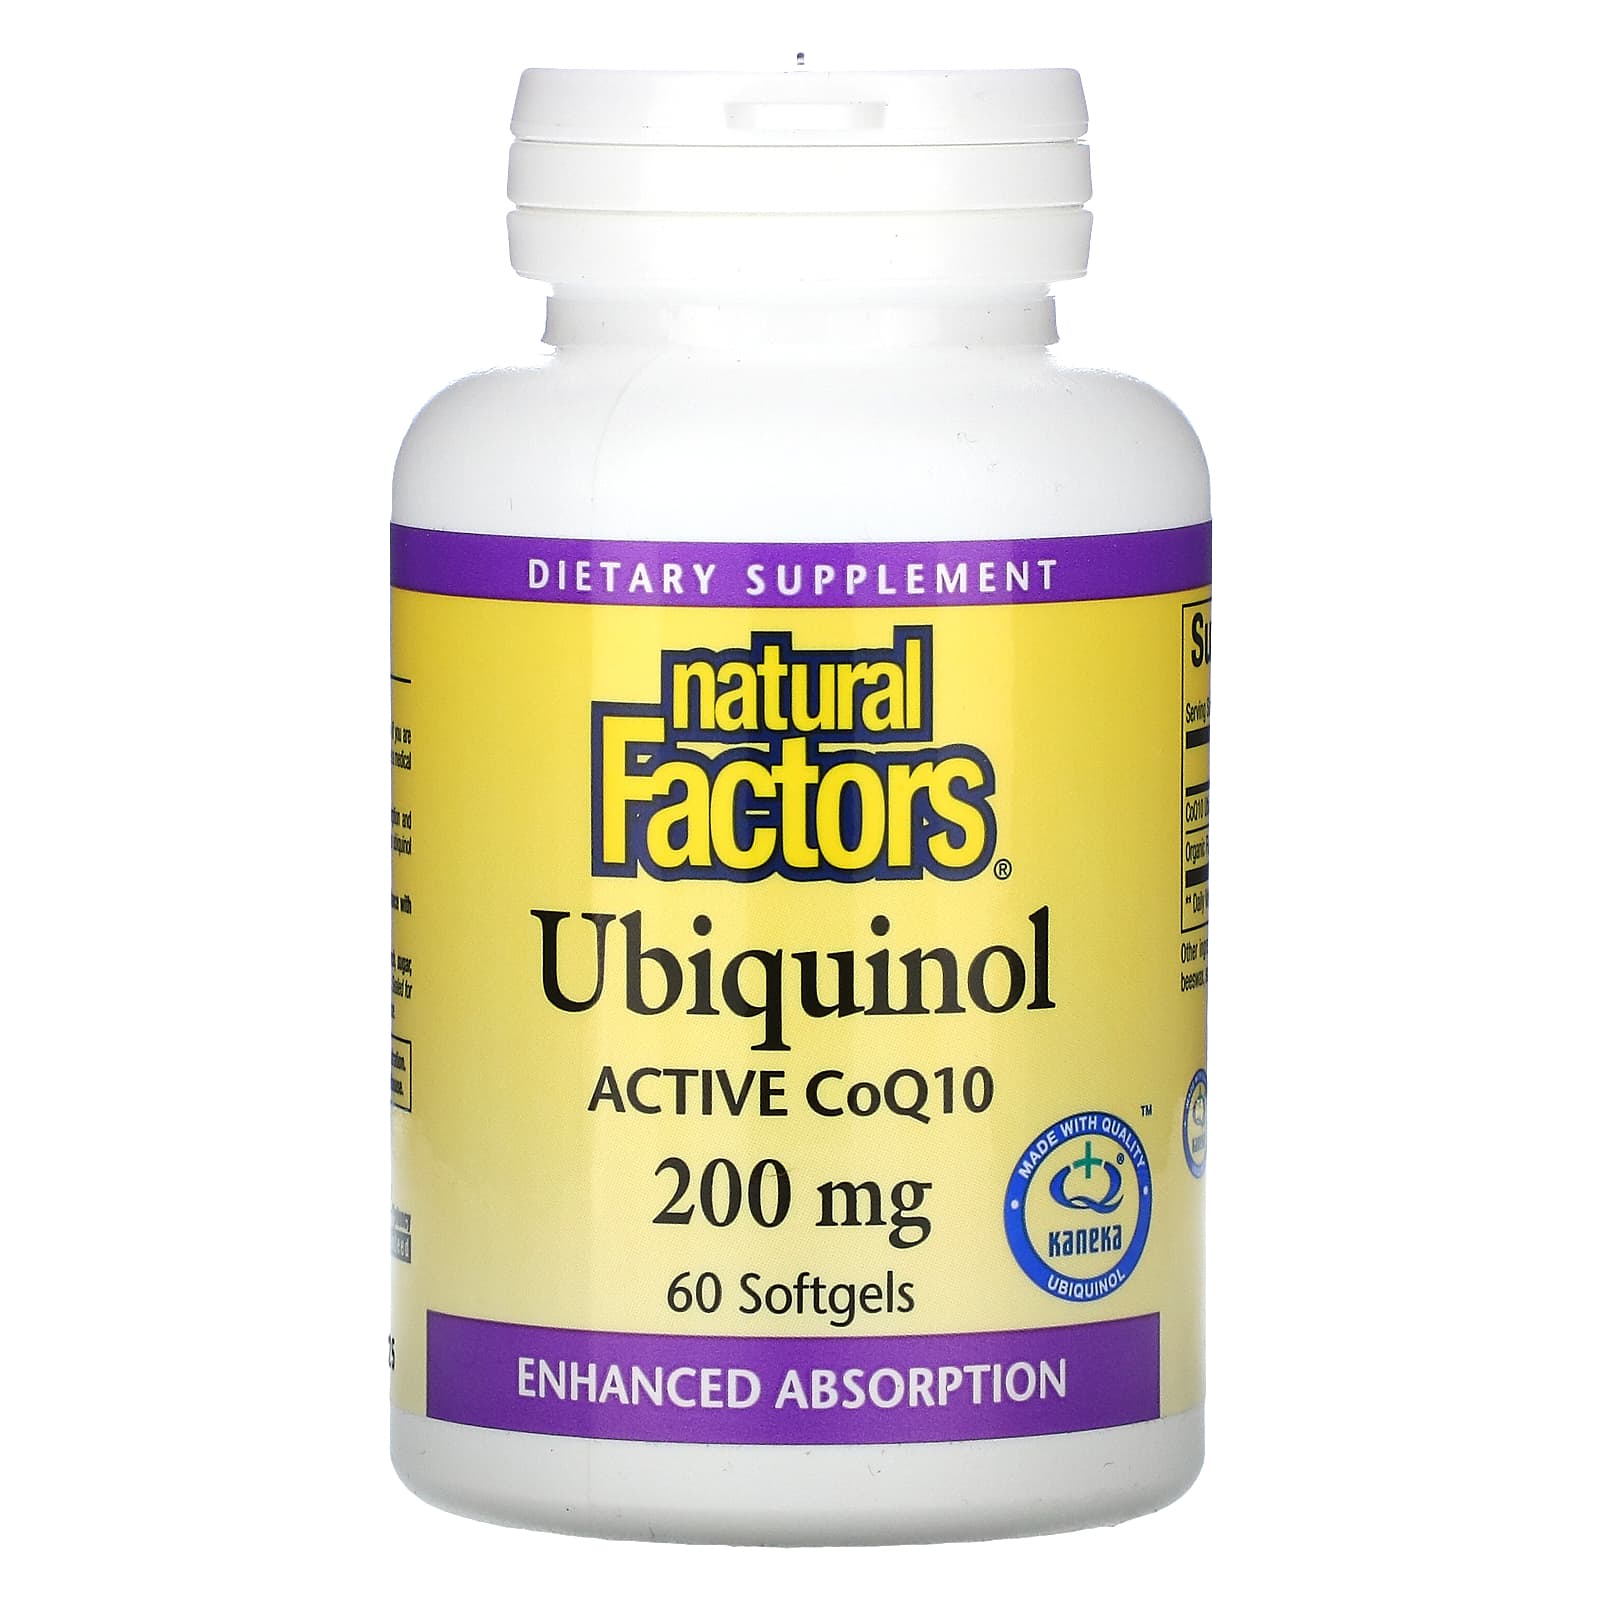 Natural Factors Ubiquinol Active CoQ10 200 Mg, 60 Softgels